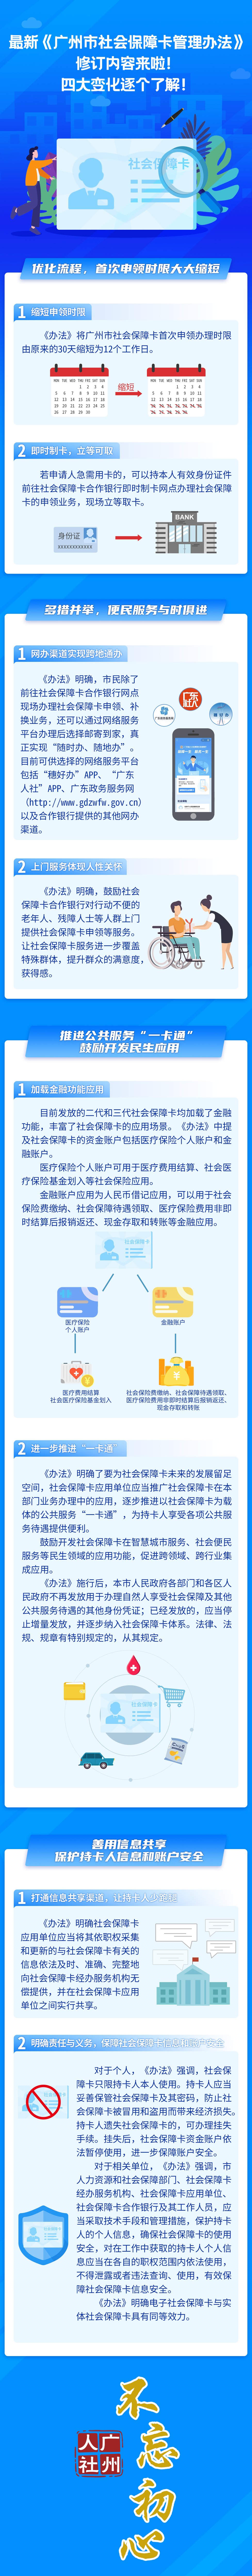 （校对稿）附件3：《广州市社会保障卡管理办法》解读材料长图20220104.jpg